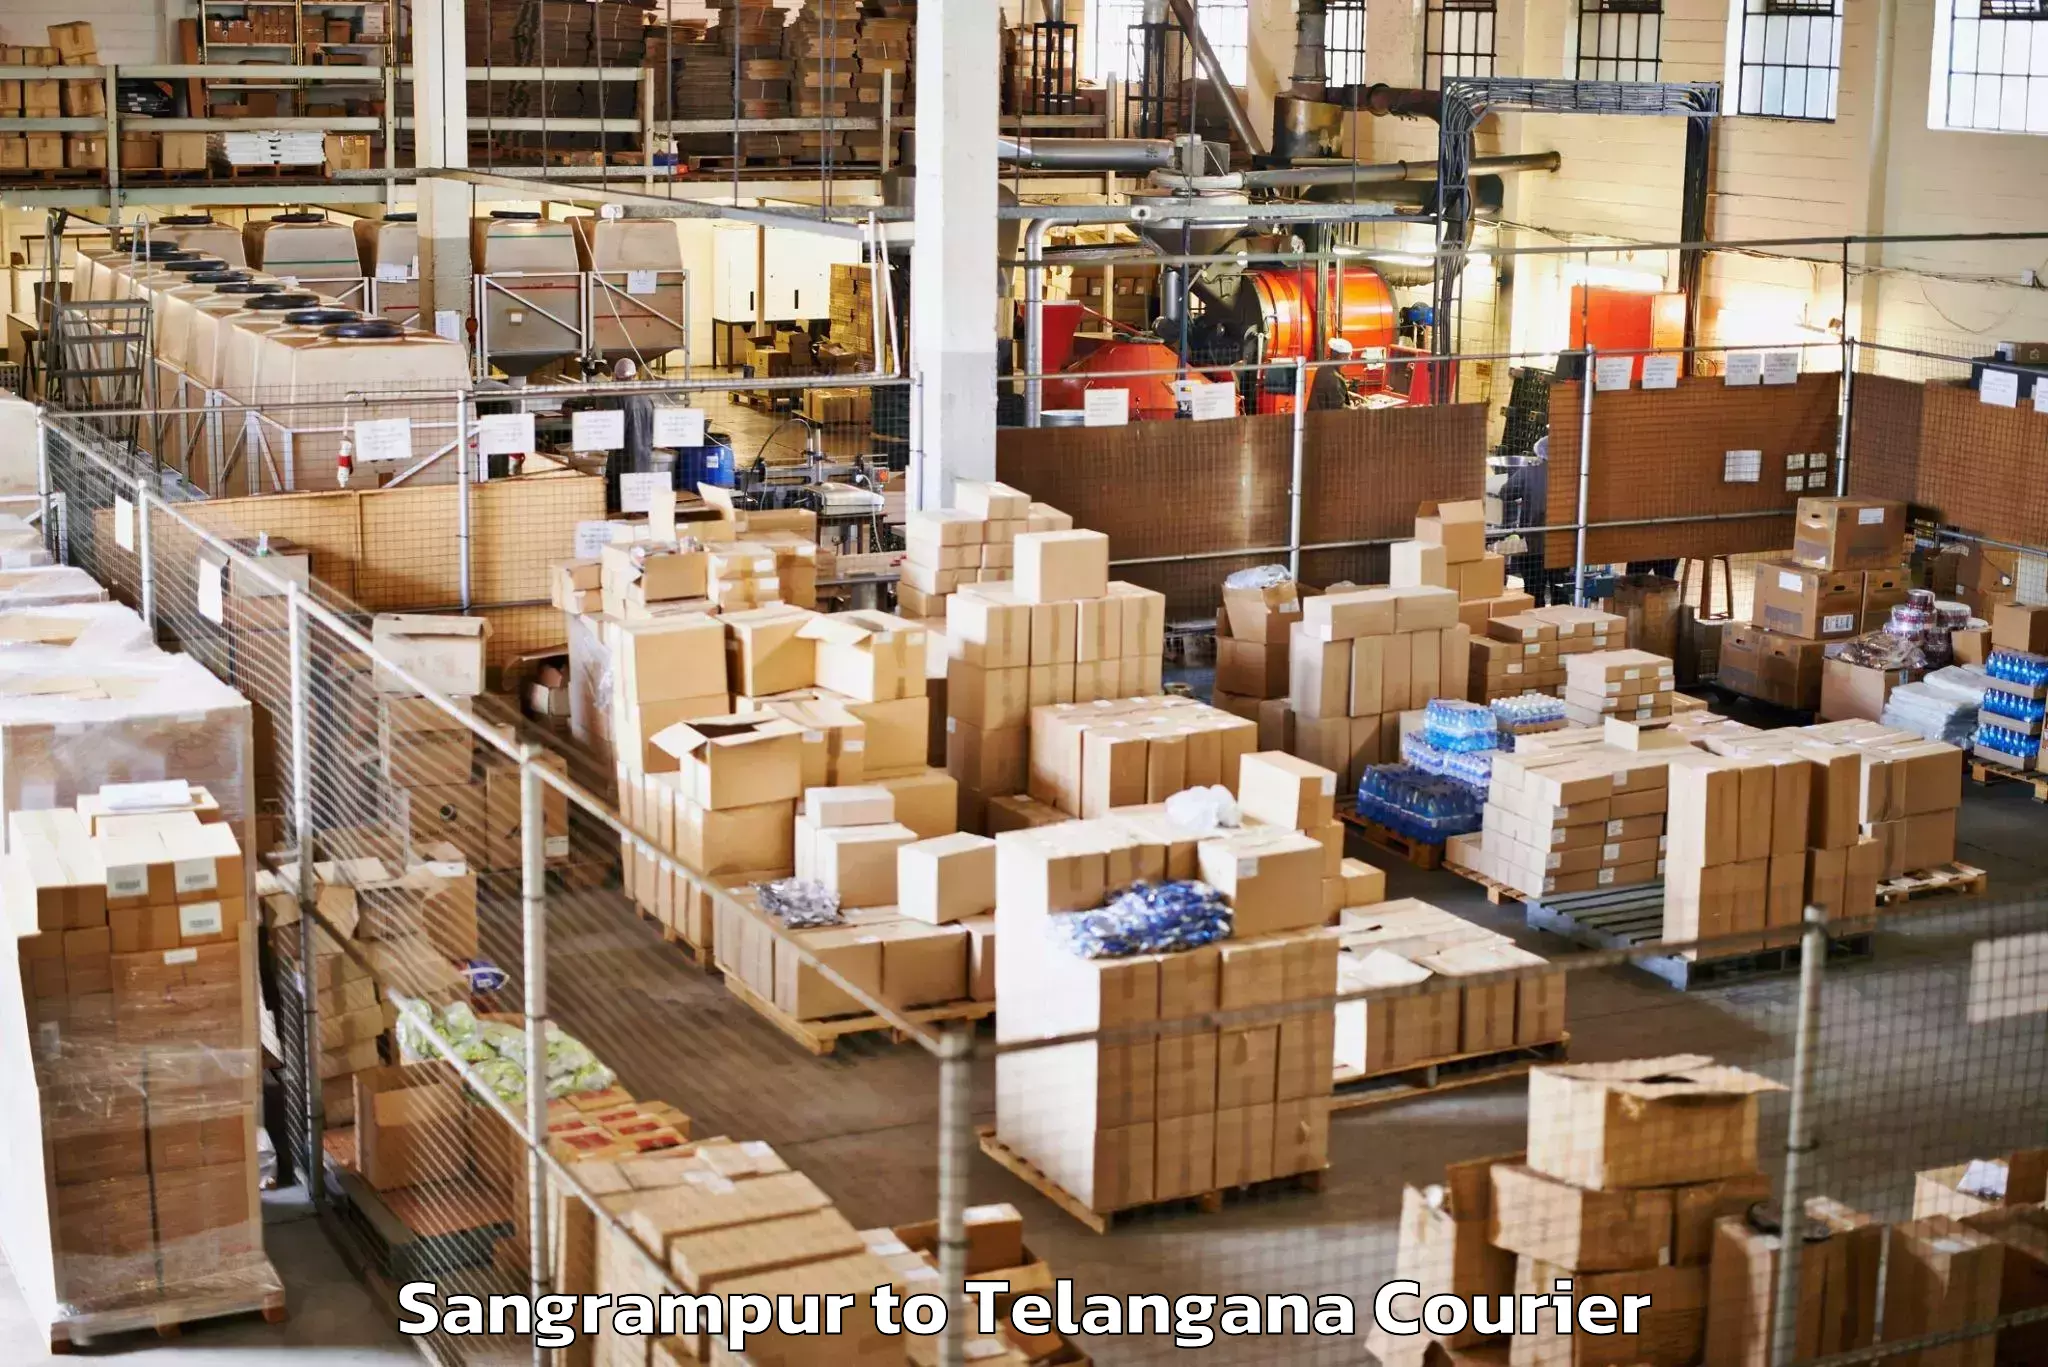 Luggage shipping service Sangrampur to Bellampalli